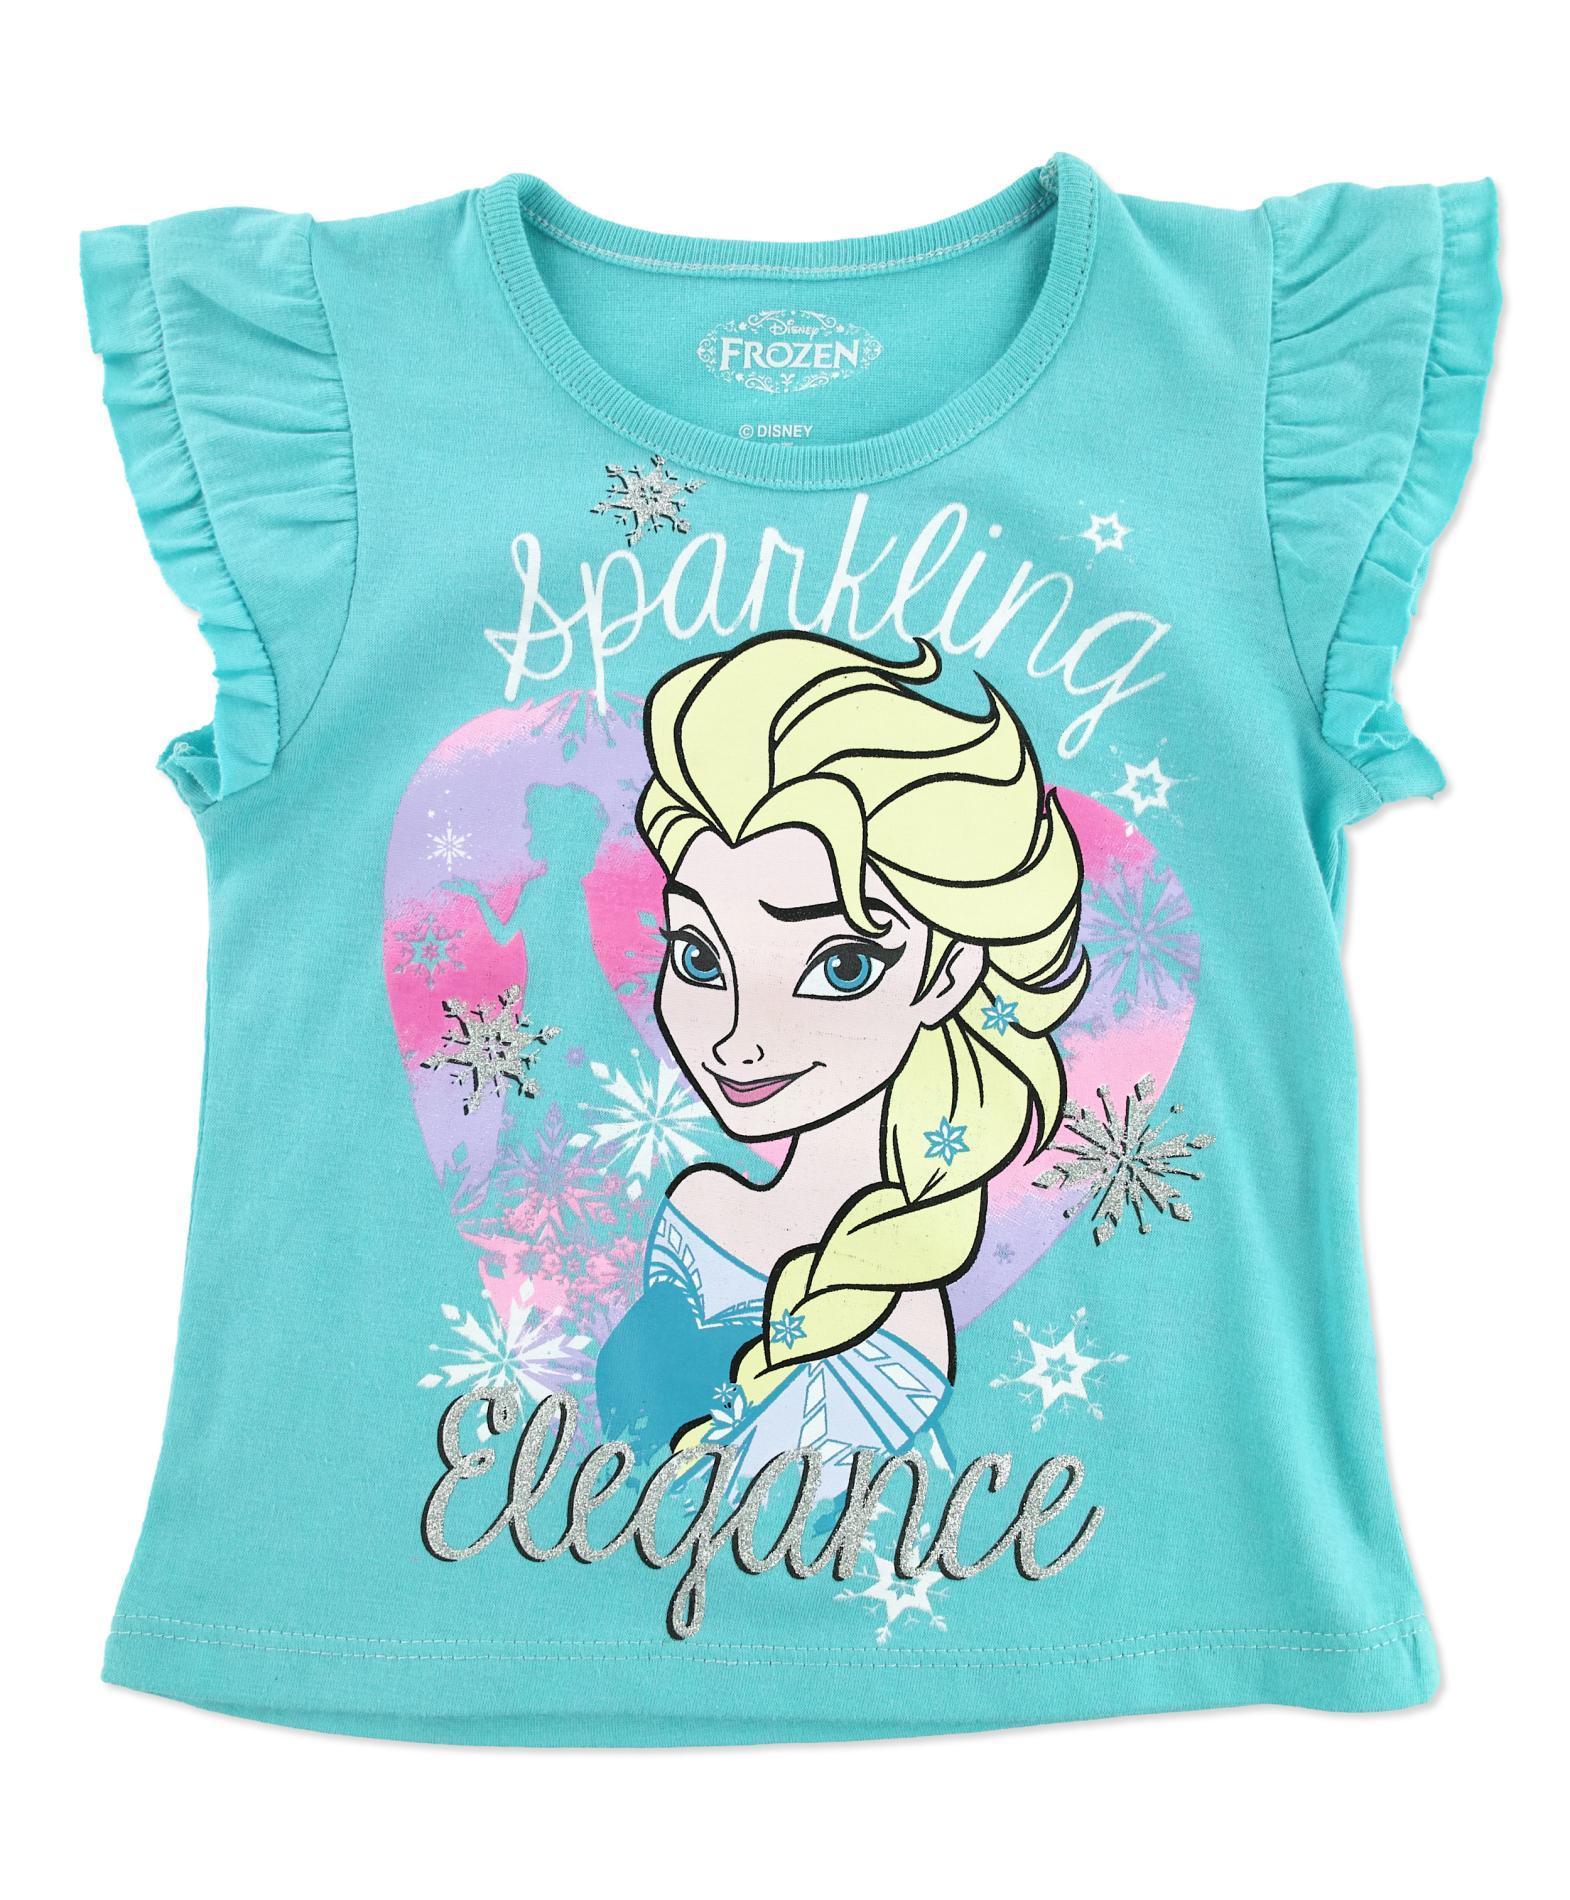 Disney Frozen Toddler Girl's Sleeveless Top - Elsa